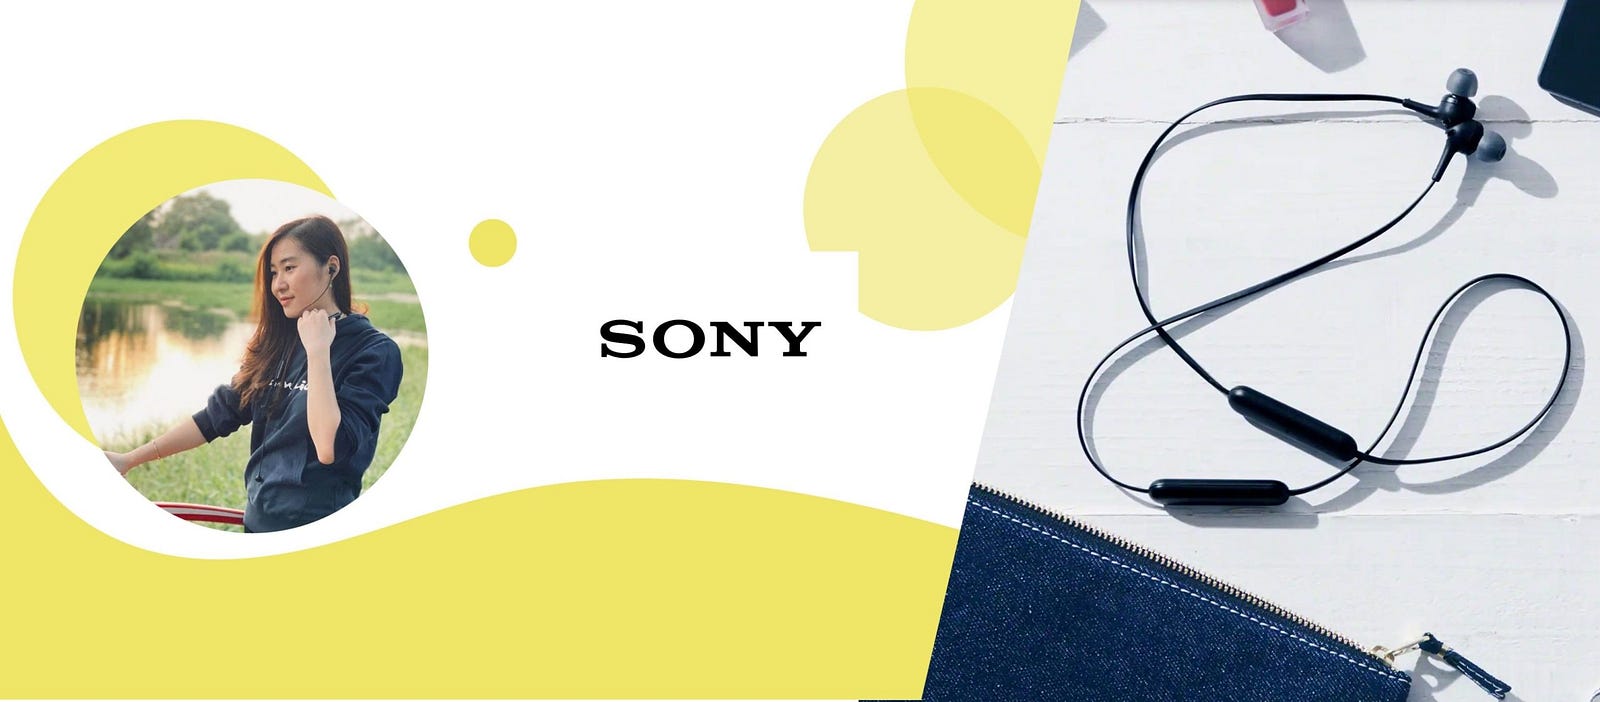 Sony: Menampilkan Produk dengan Menemani Kegiatan Sehari-hari Ala LEMON Influencer